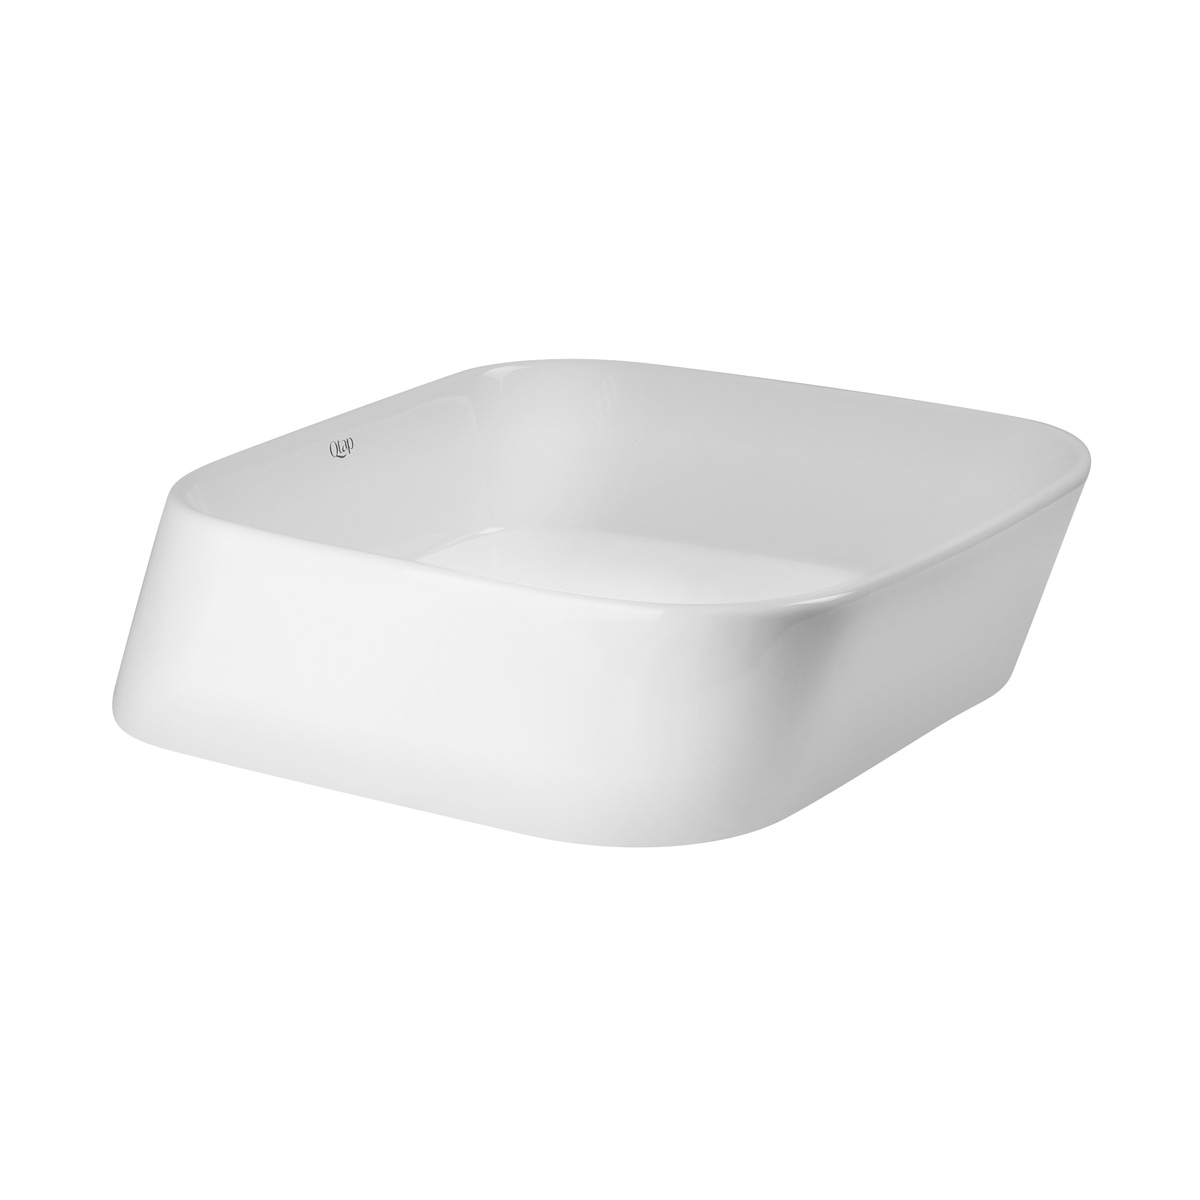 Умывальник накладной на столешницу для ванной 400мм x 355мм Q-TAP Scorpio белый прямоугольная QT14112241W